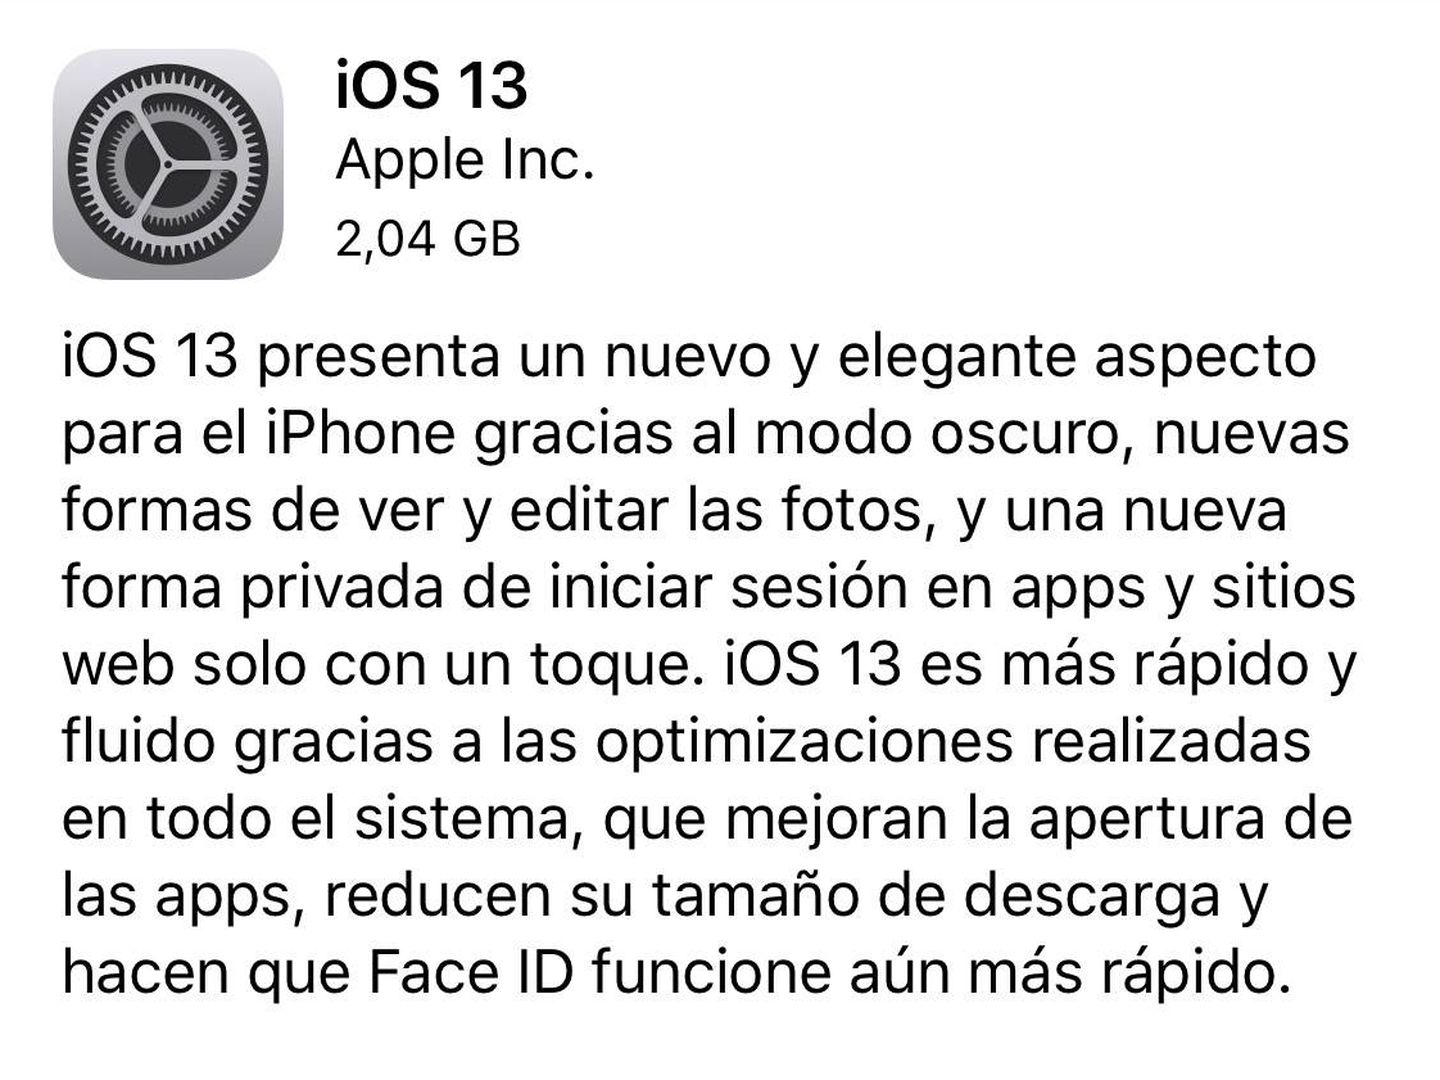 Mensaje de los terminales iPhone para actualizar el sistema a iOS 13.